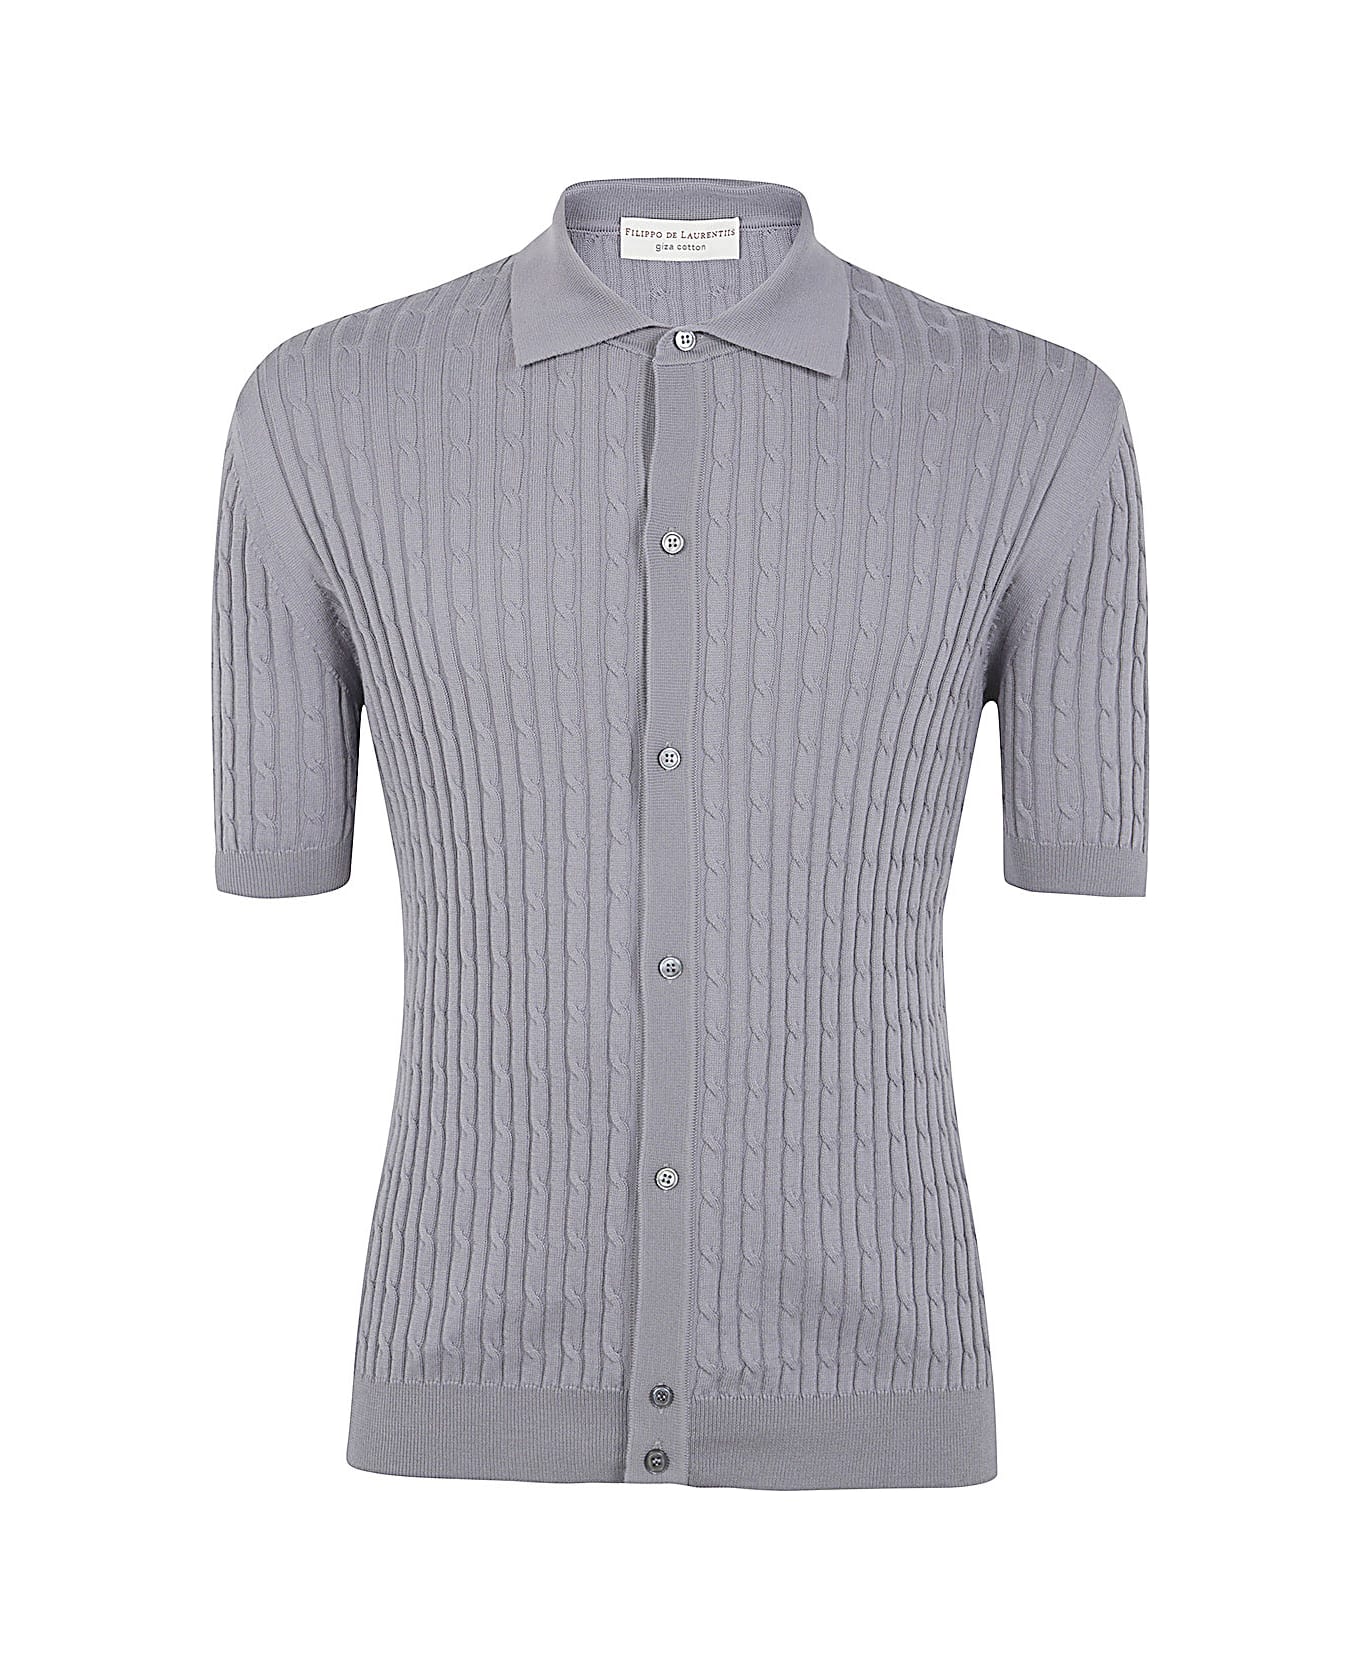 Filippo De Laurentiis Short Sleeves Shirt - Medium Grey